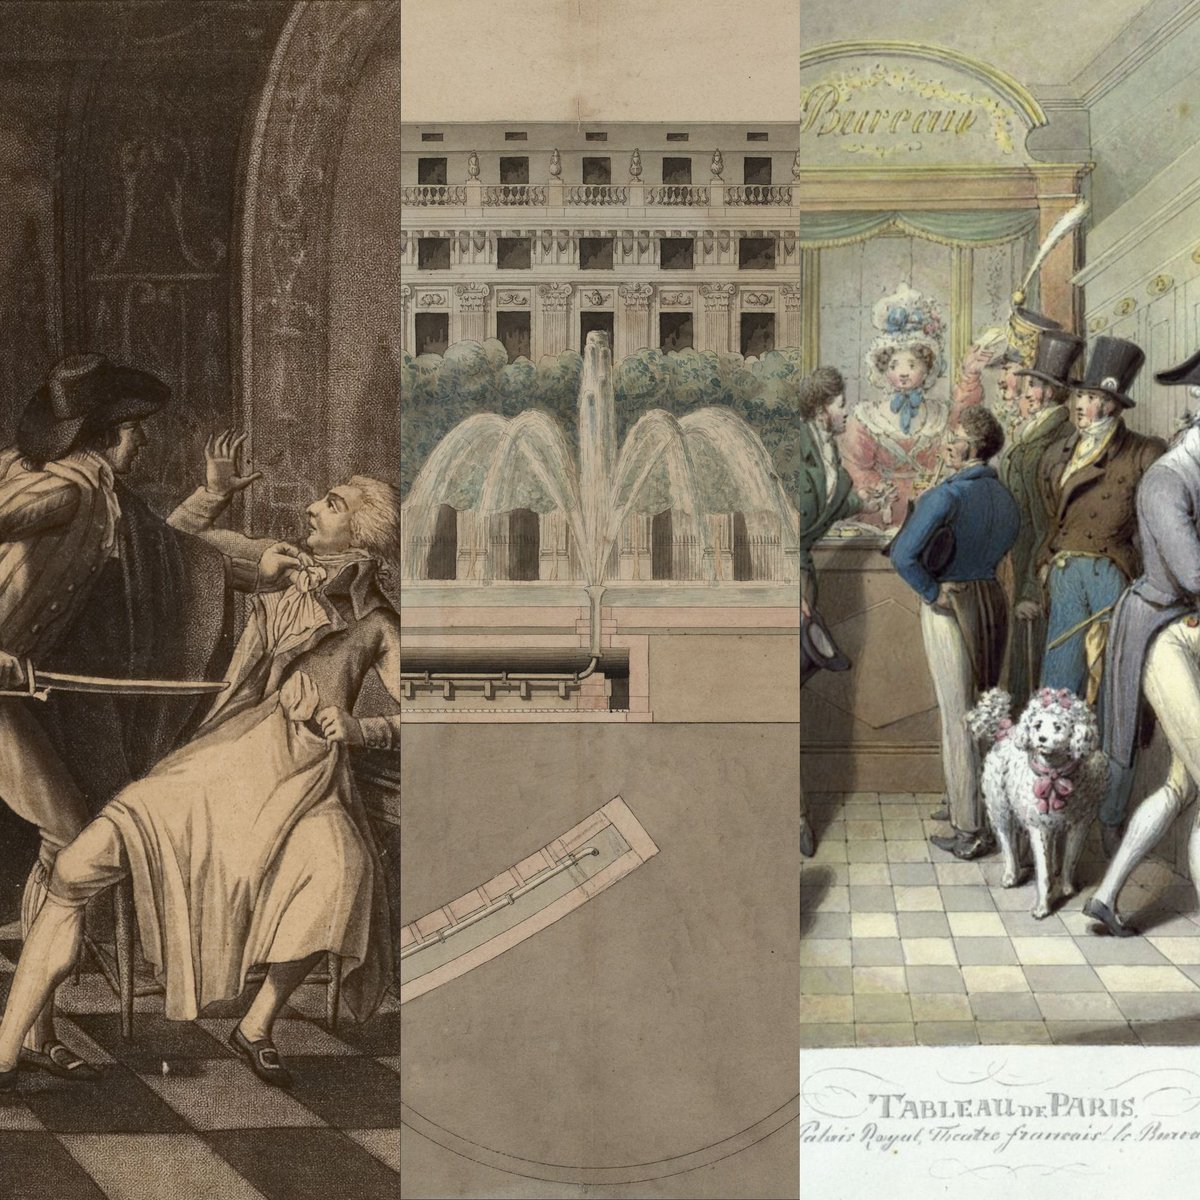 [SEMINAIRE] Les invisibles du Palais-Royal Découvrez les personnes, espaces et activités invisibles dont le jardin du Palais-Royal a été le théâtre (de 1780 à la Restauration). 🗓️06/02 🔗bit.ly/3UlnuCt